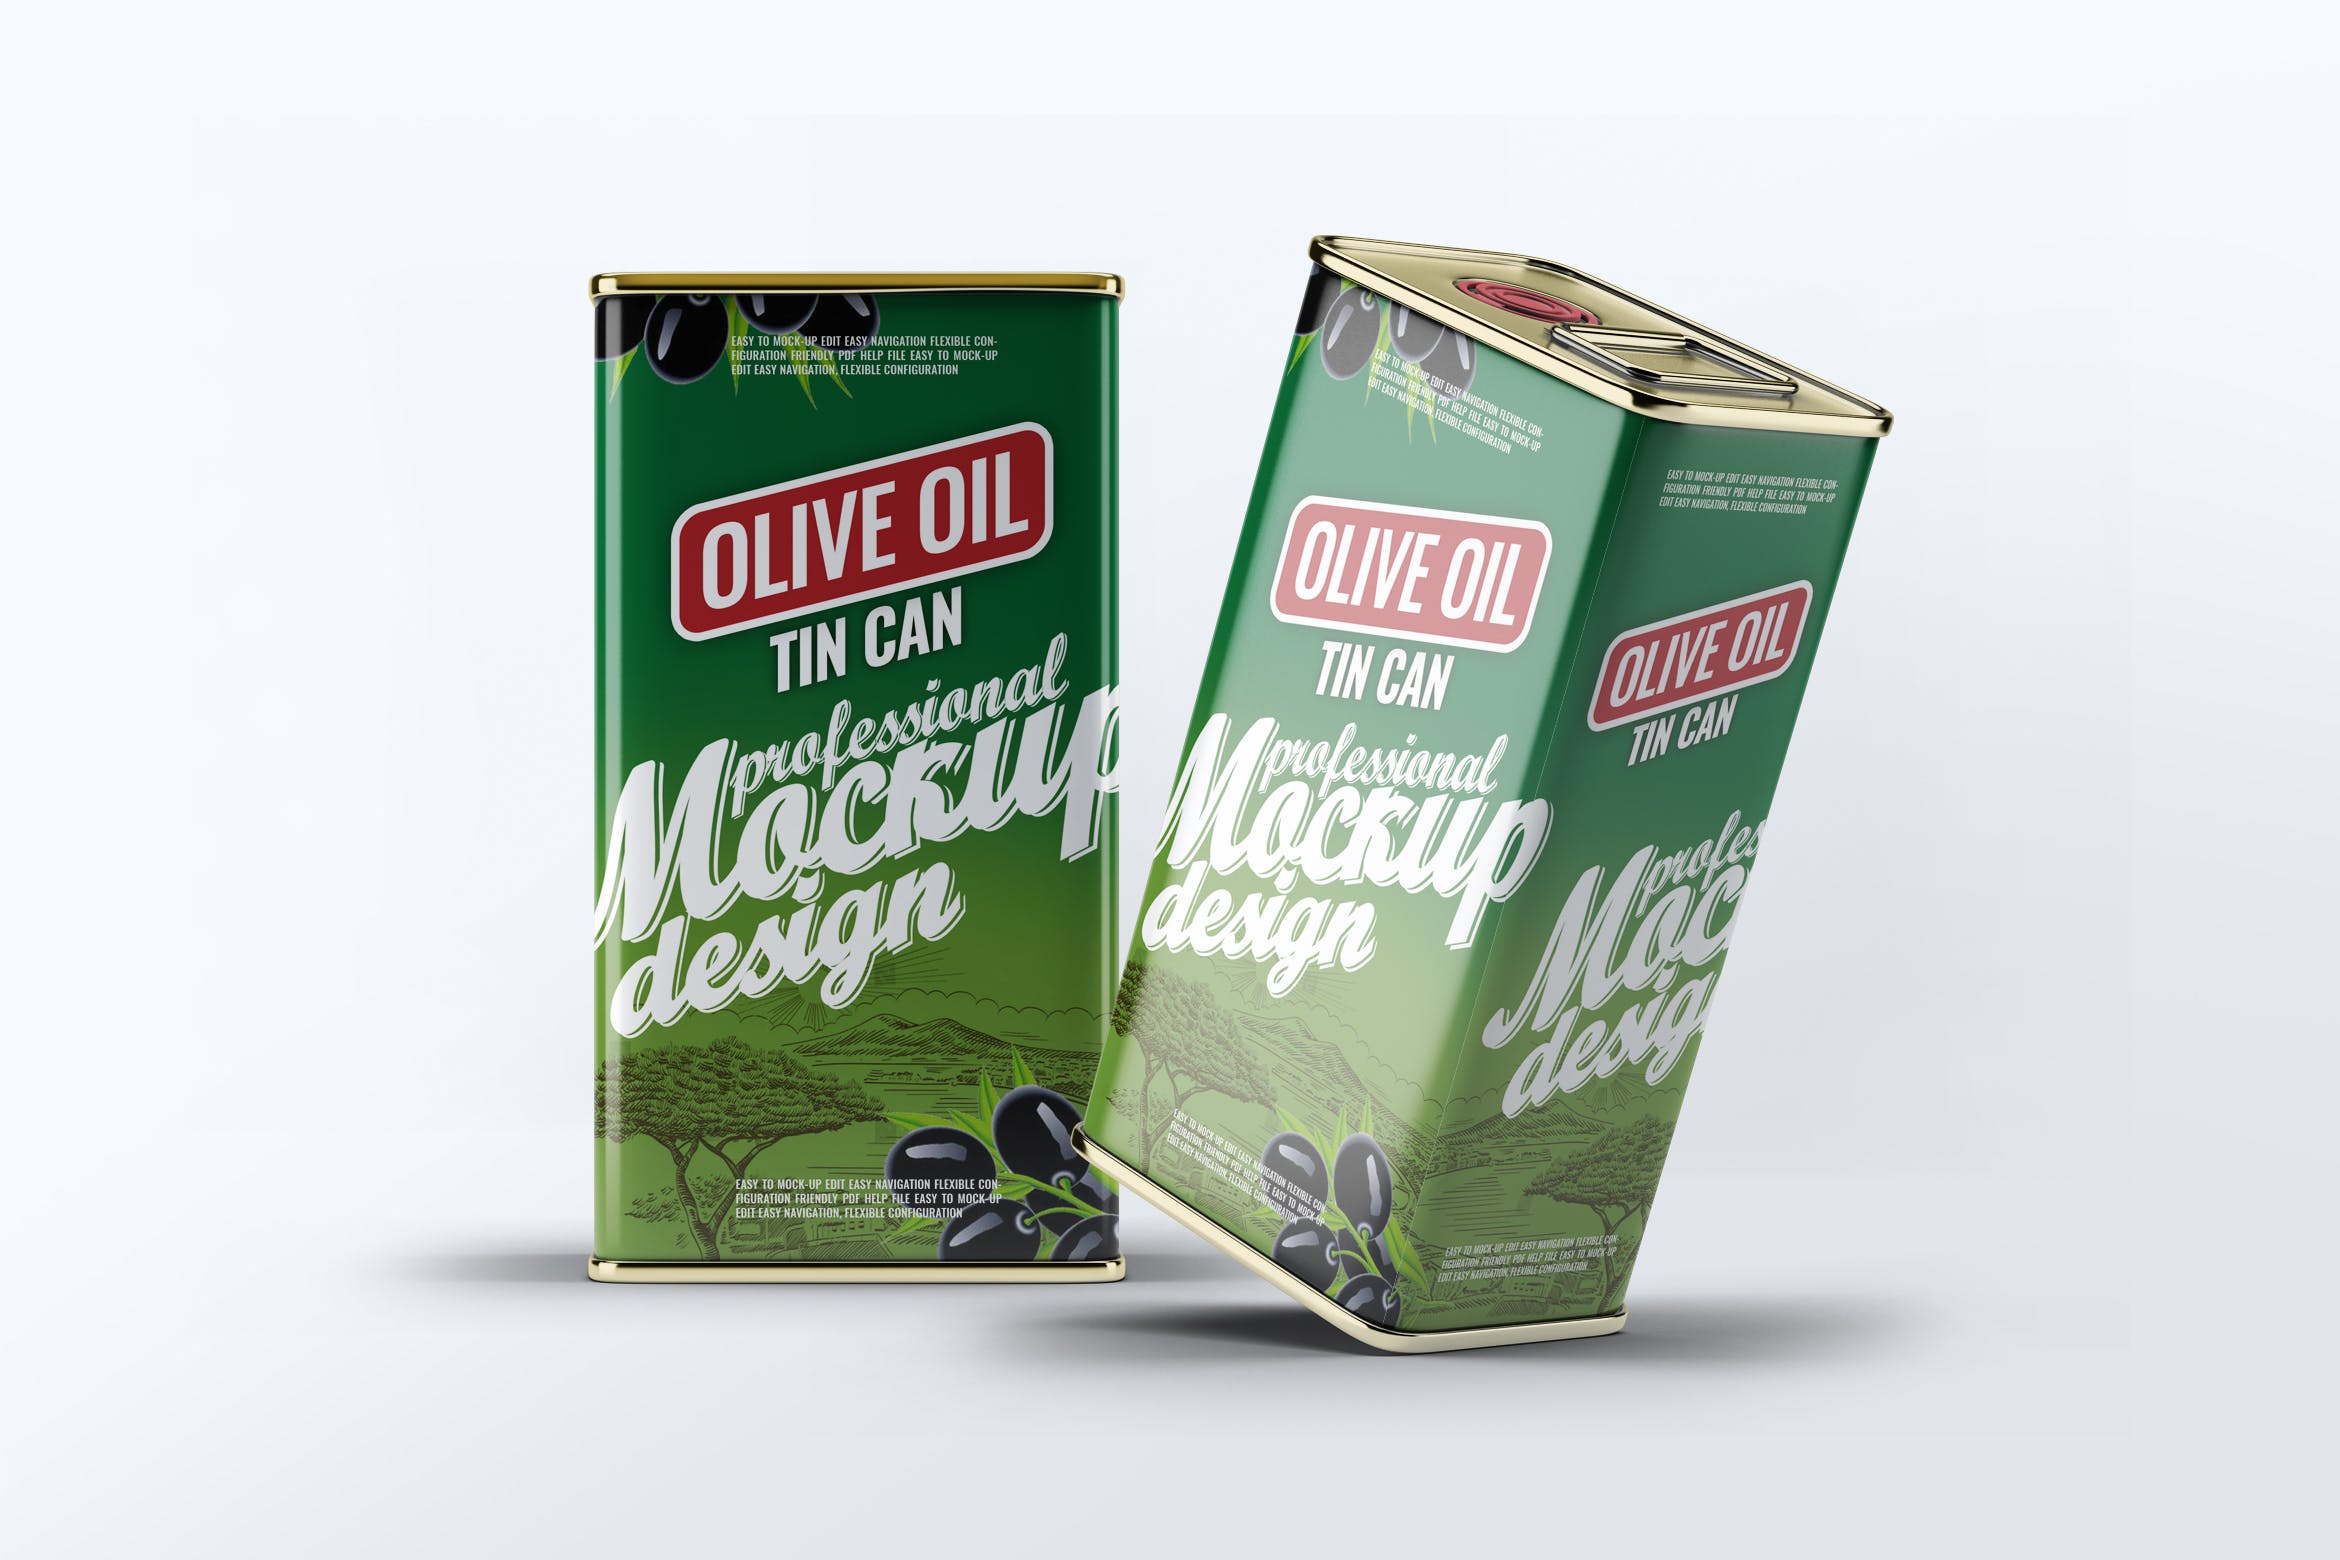 橄榄油罐头包装外观设计效果图素材中国精选模板 Tin Can Olive Oil Mock-Up插图